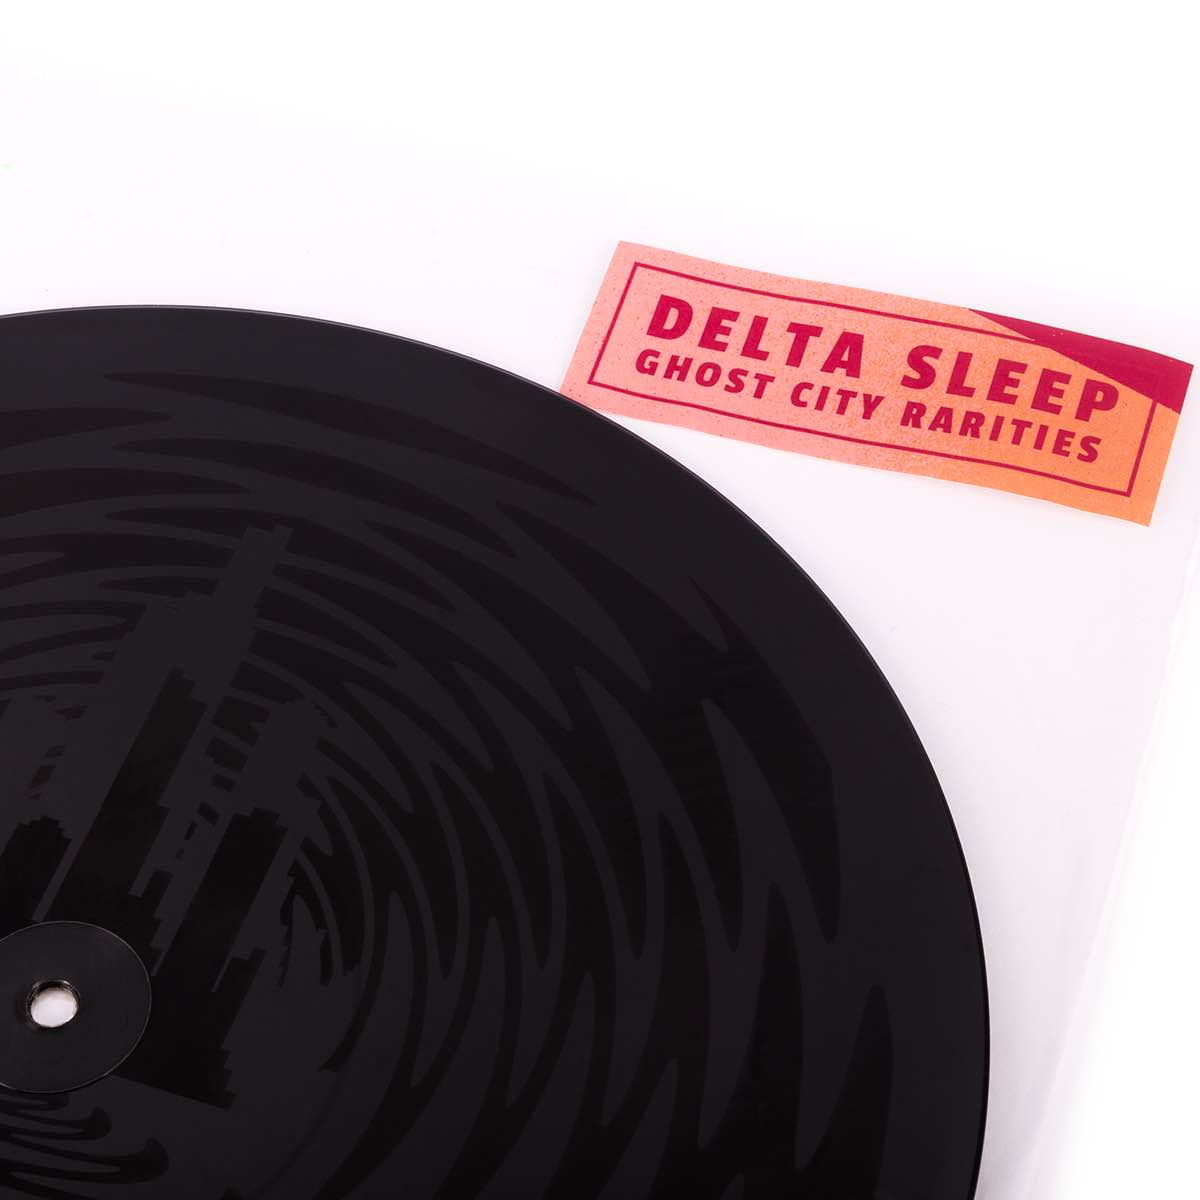 Delta Sleep – Ghost City Rarities